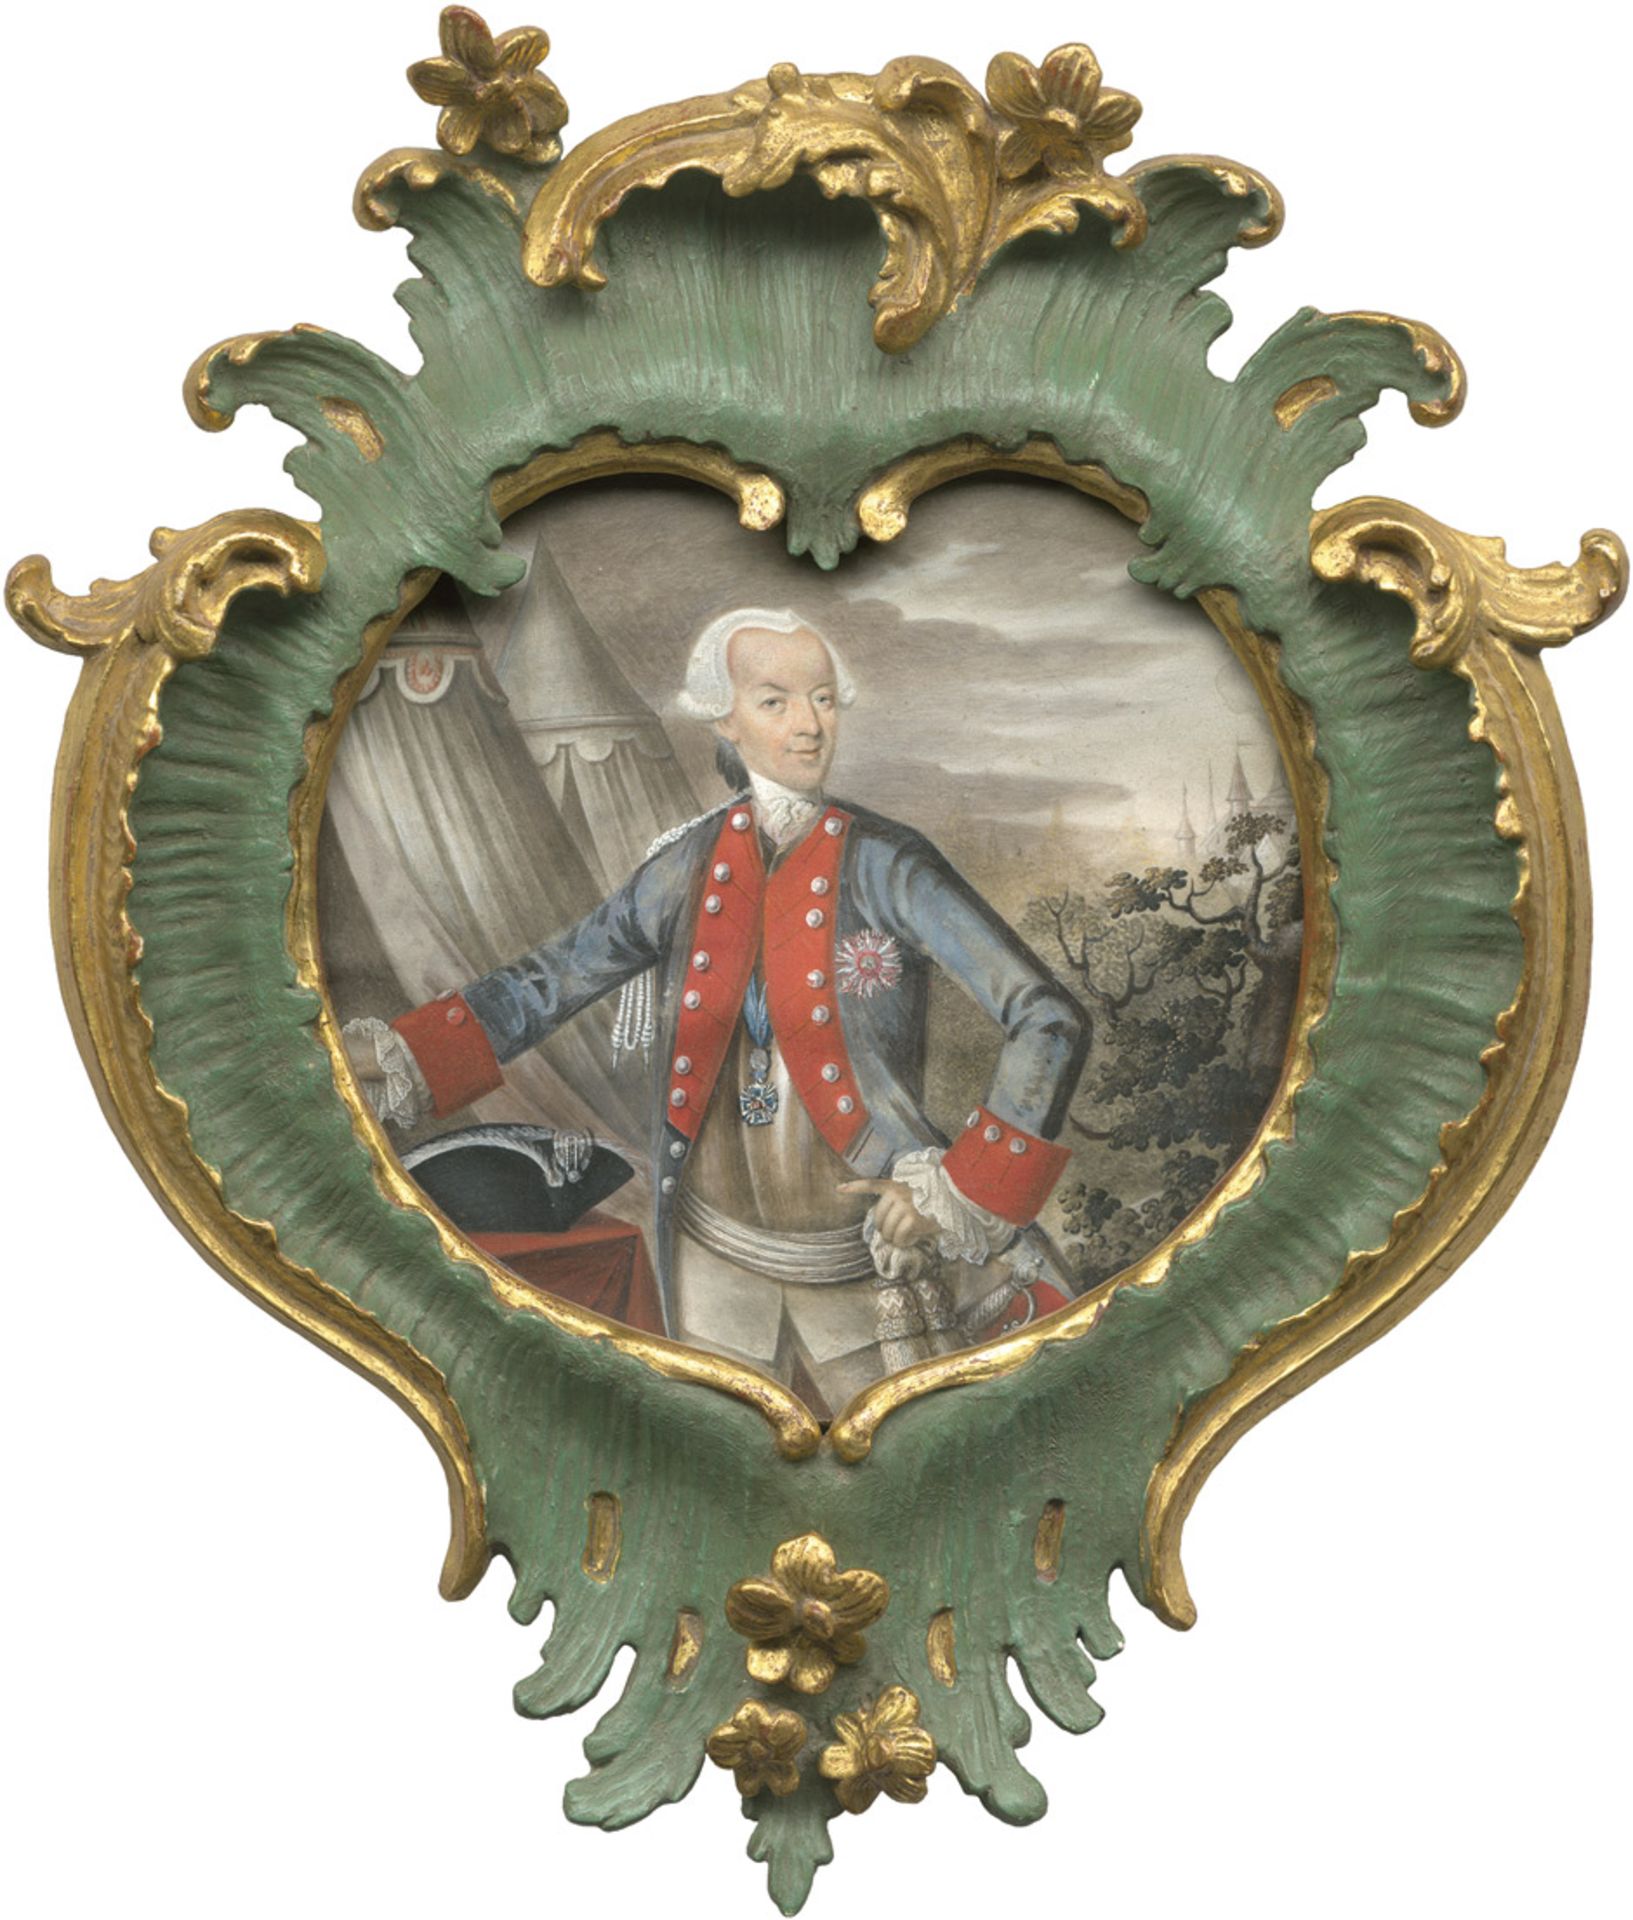 Deutsch: 1782. Bildnis Christoph Franz, Baron von Khronegg (1718-1786) in Uniform um 1770. Bildnis